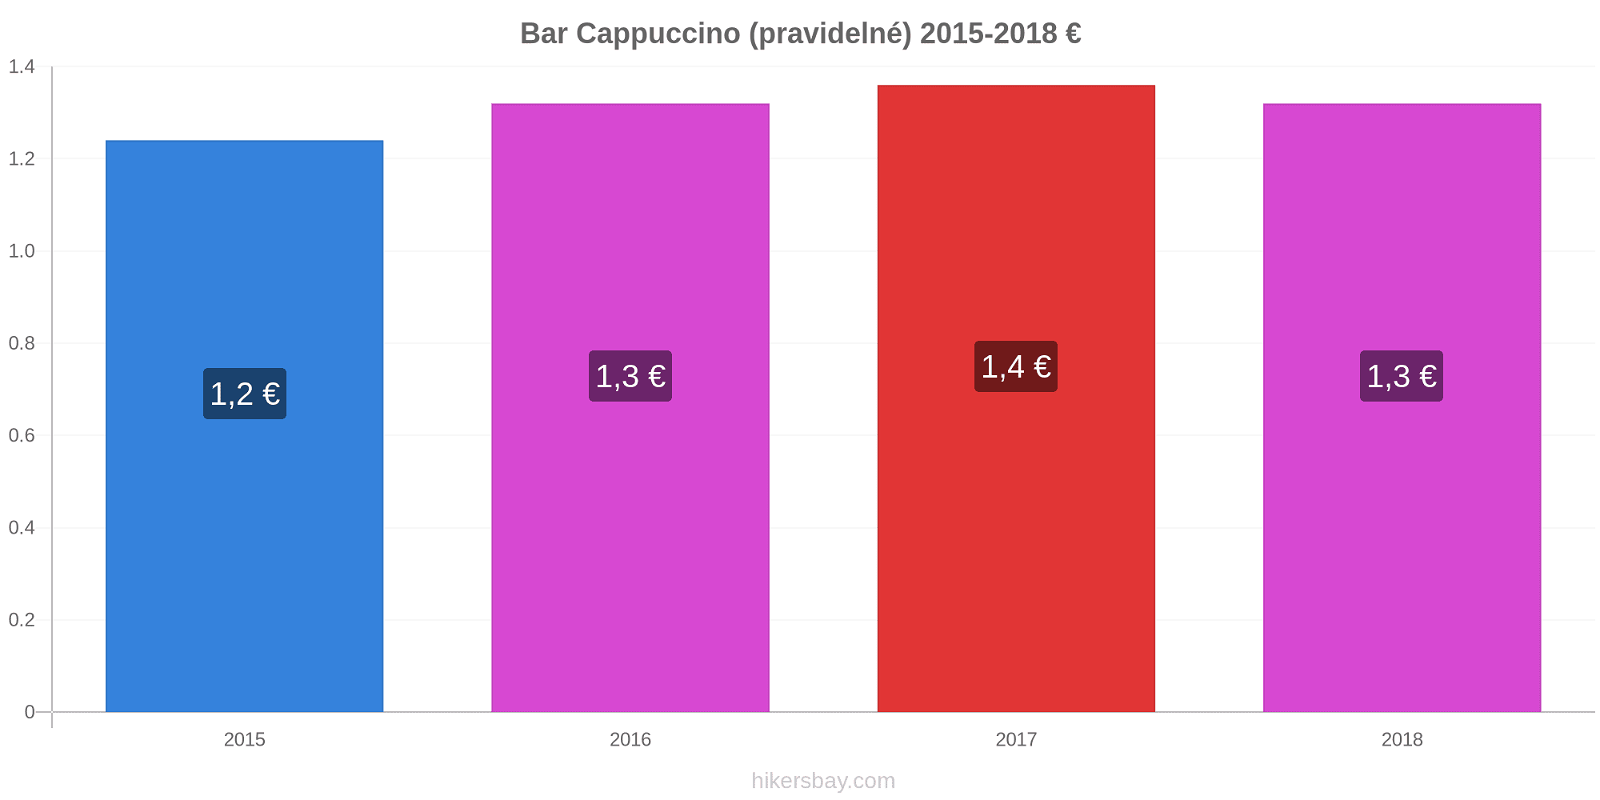 Bar změny cen Cappuccino (pravidelné) hikersbay.com